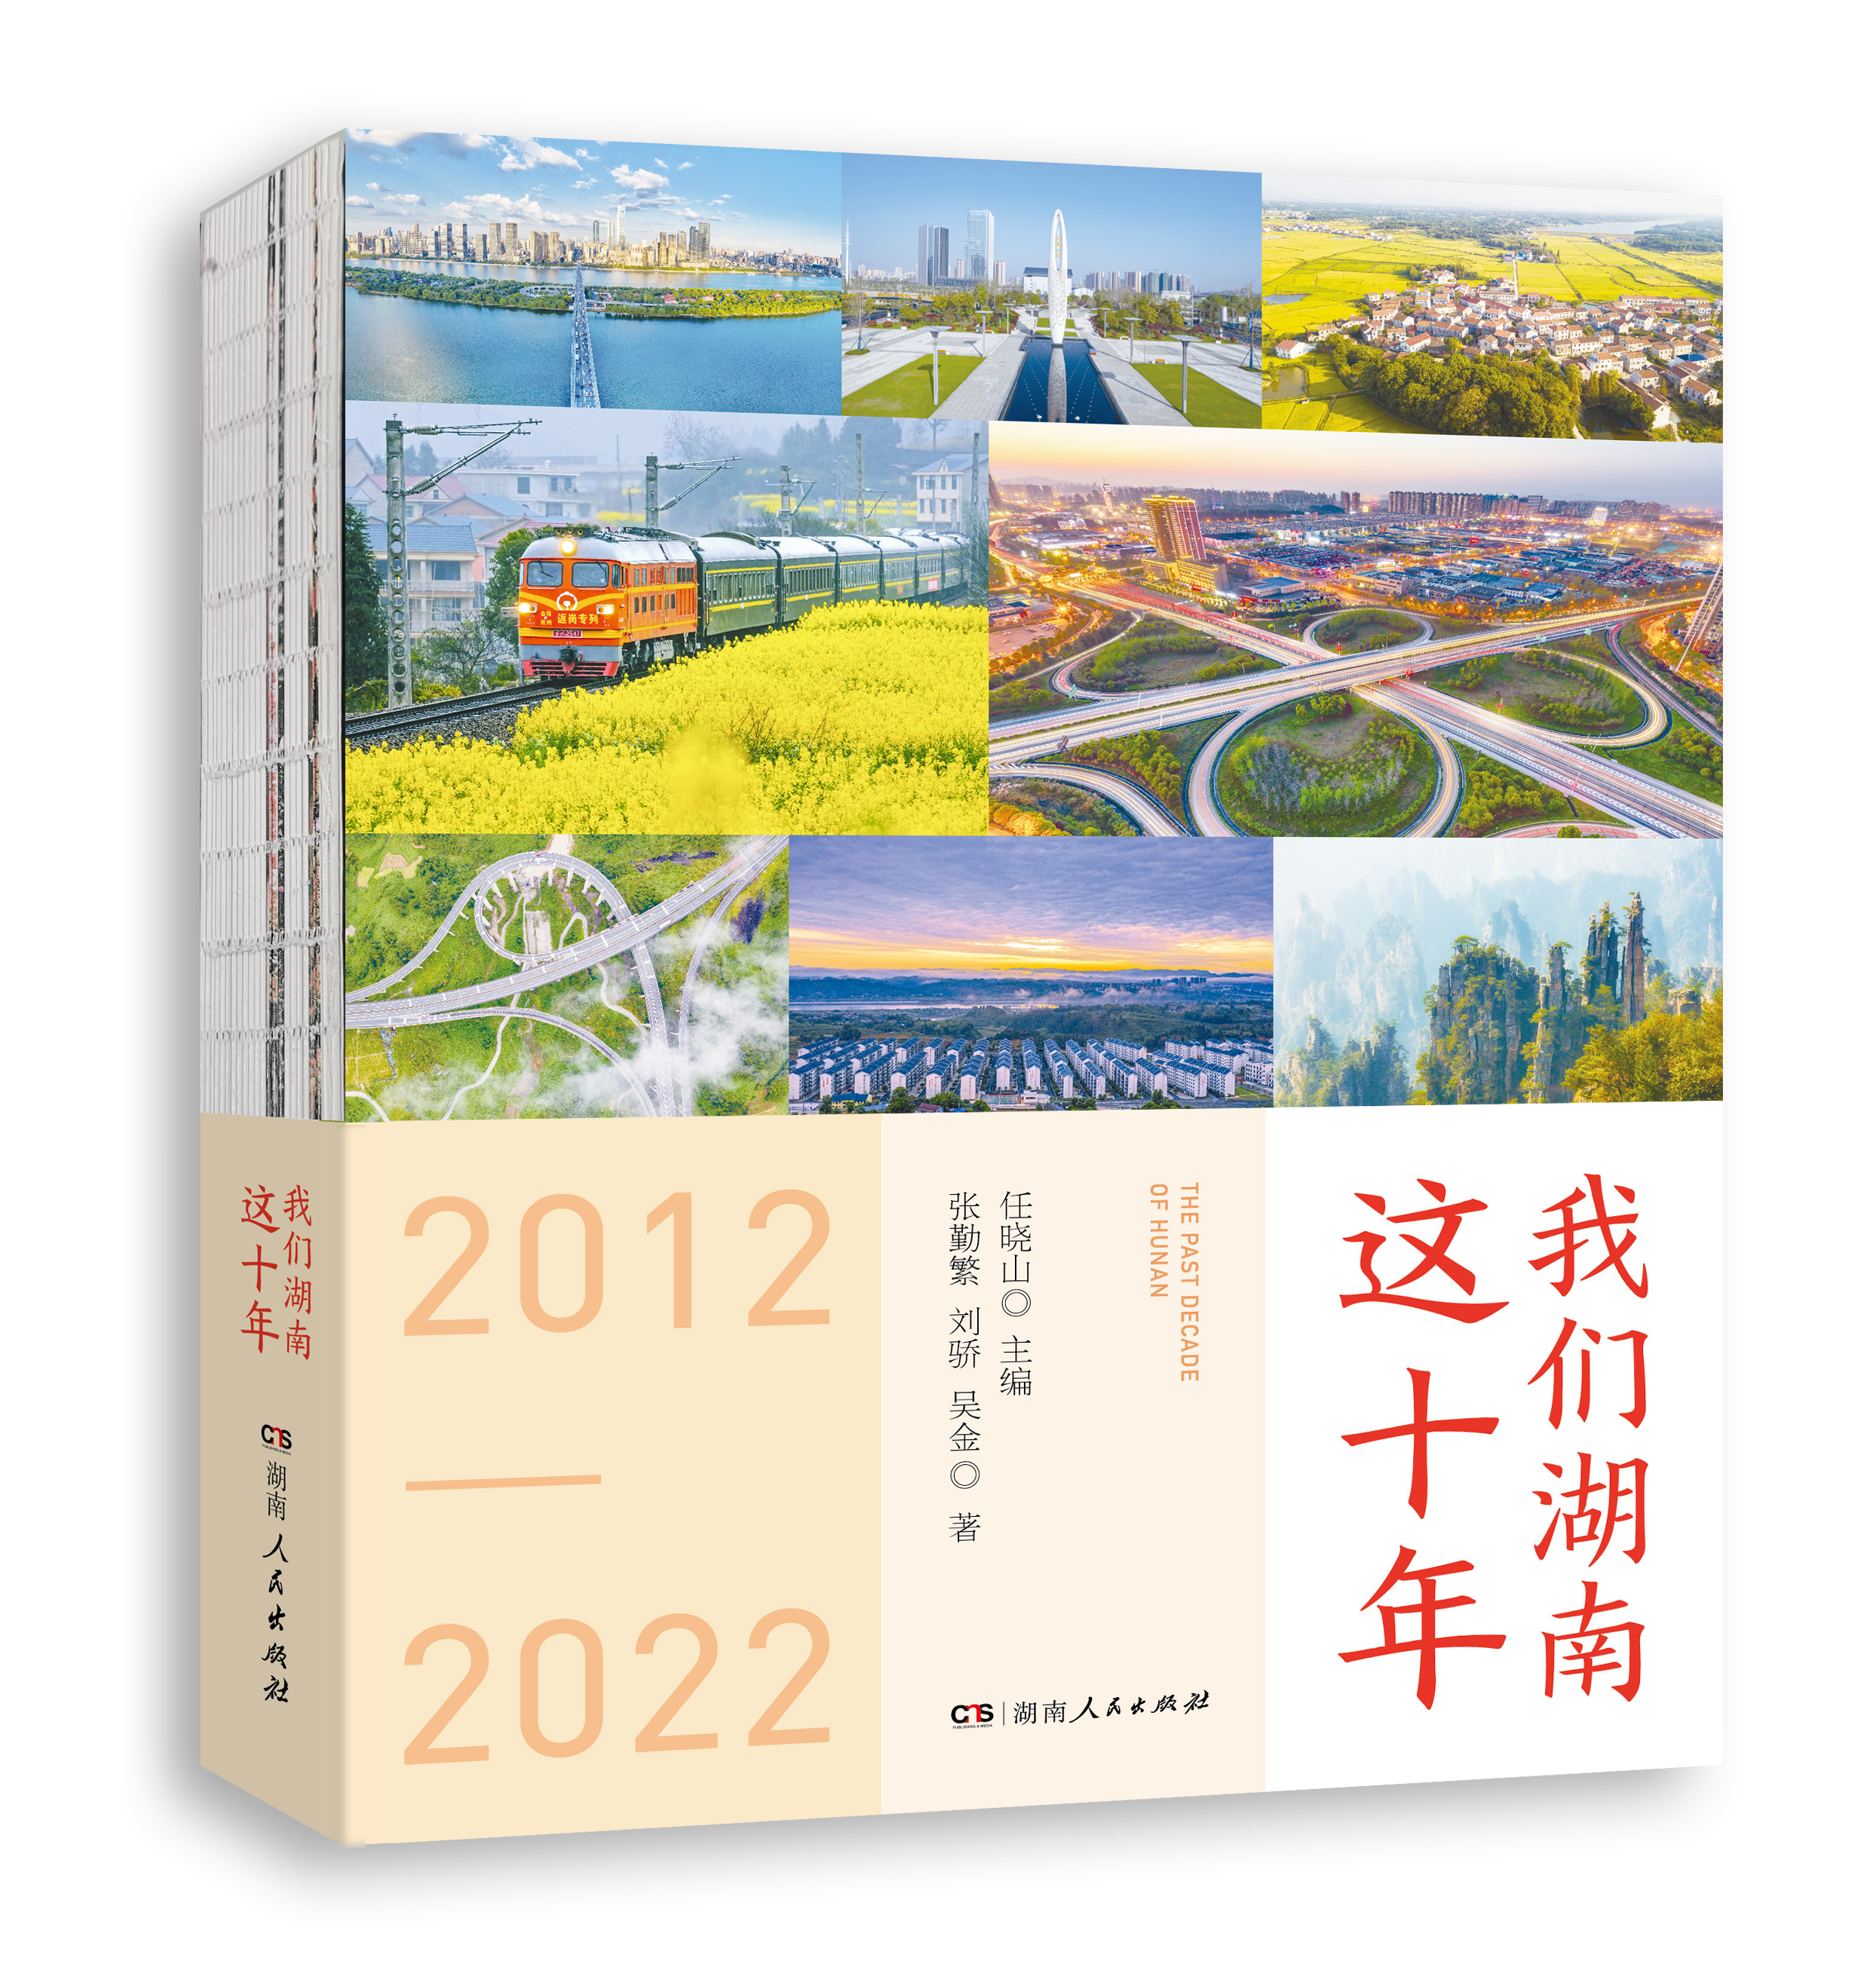 书评丨《我们湖南这十年》：在三湘大地伟大变革中汲取迈向新征程的奋进力量